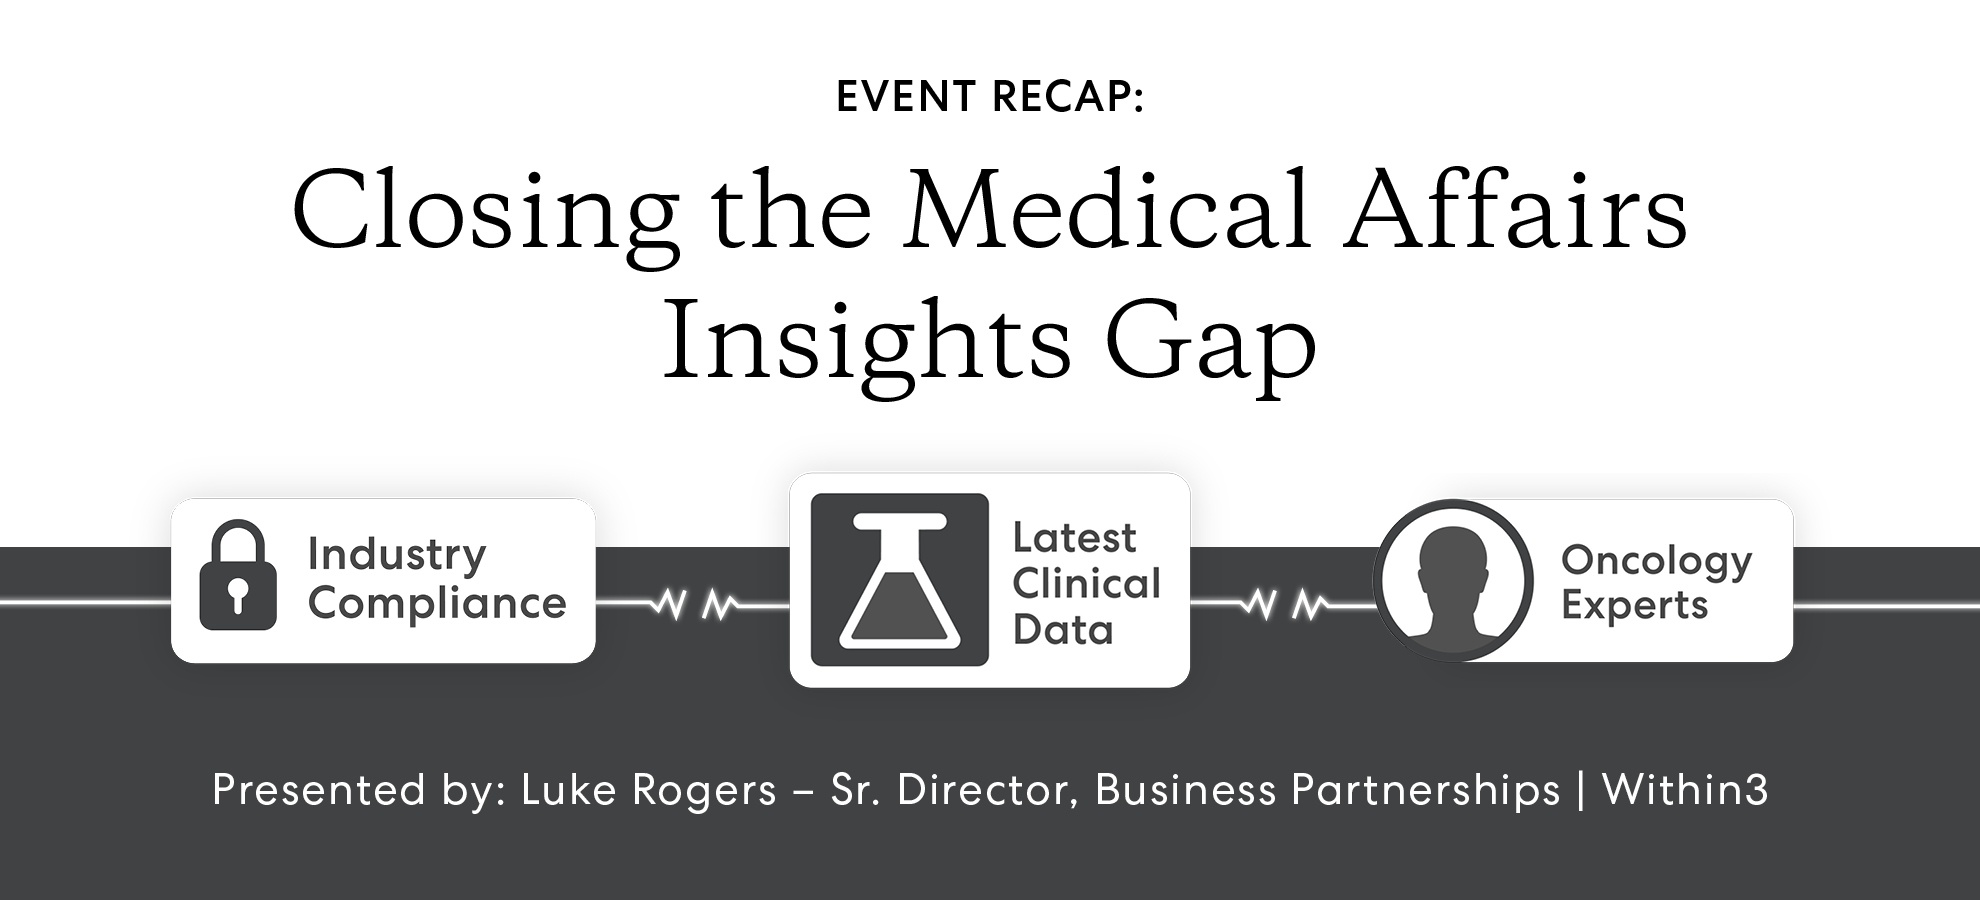 Event recap: Closing the insight gap in medical affairs